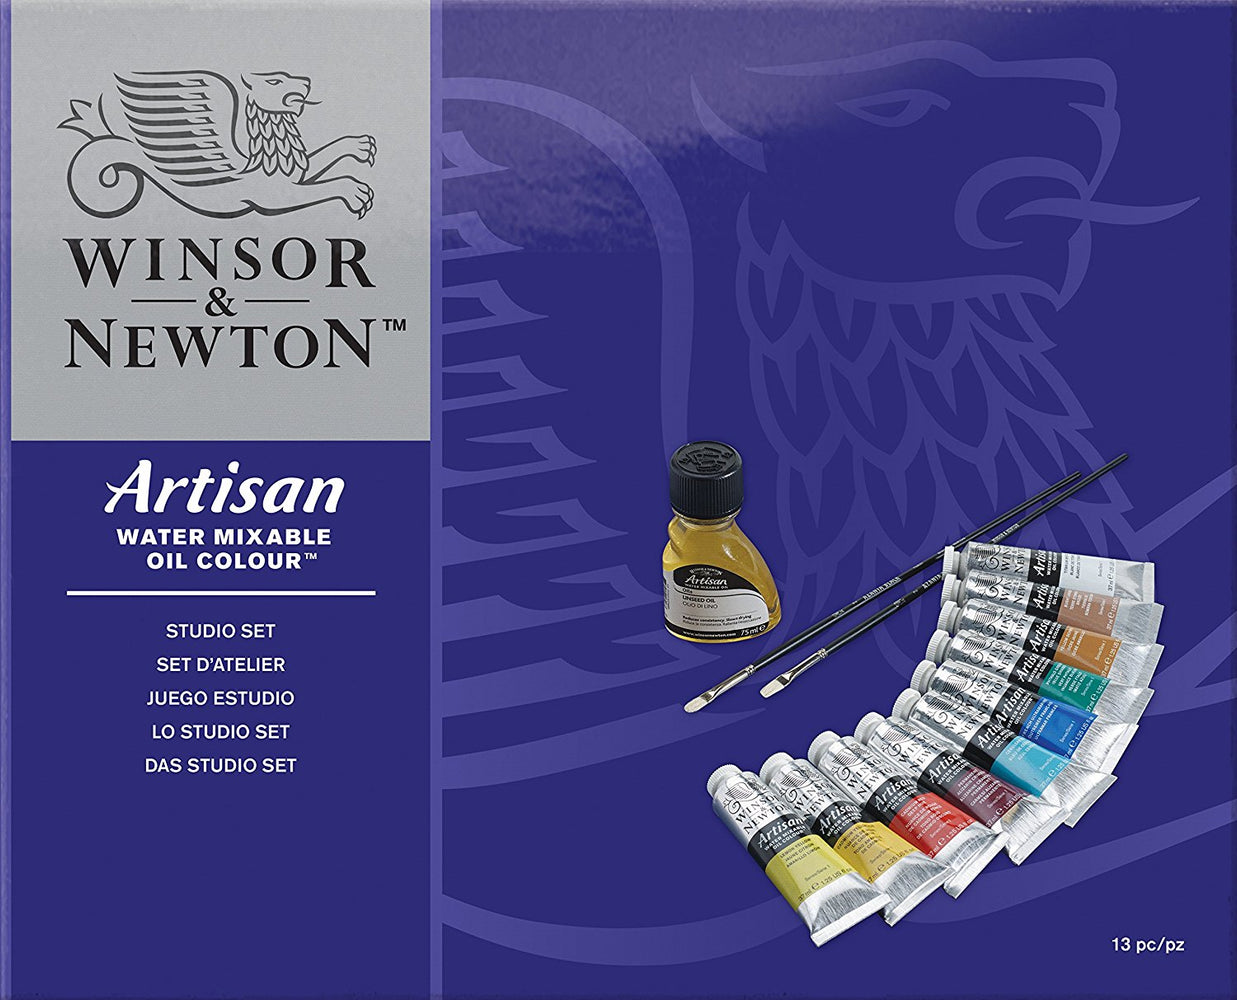 Winsor & Newton - Artisan Water Mixable Oil Colour Studio Set - Artisan Studio Set